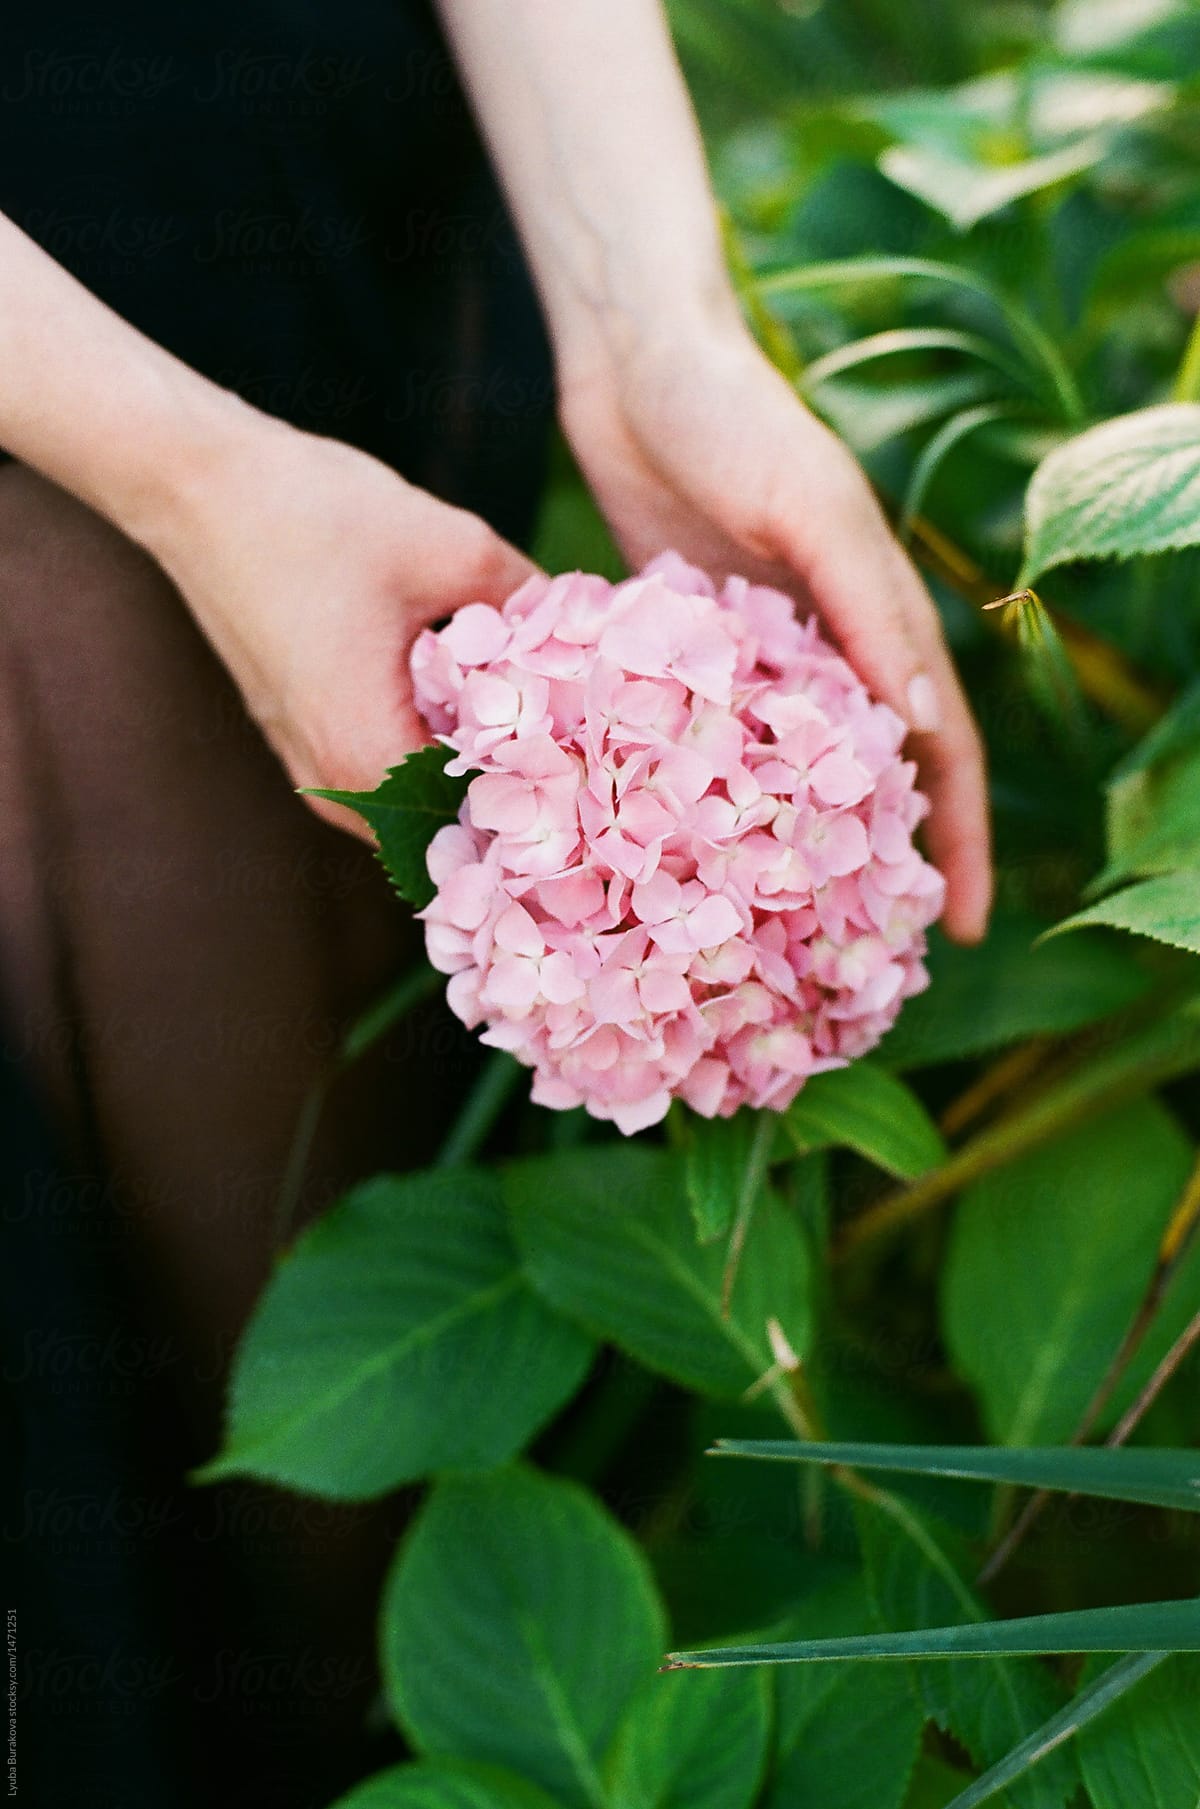 Woman holding hydrangea flower